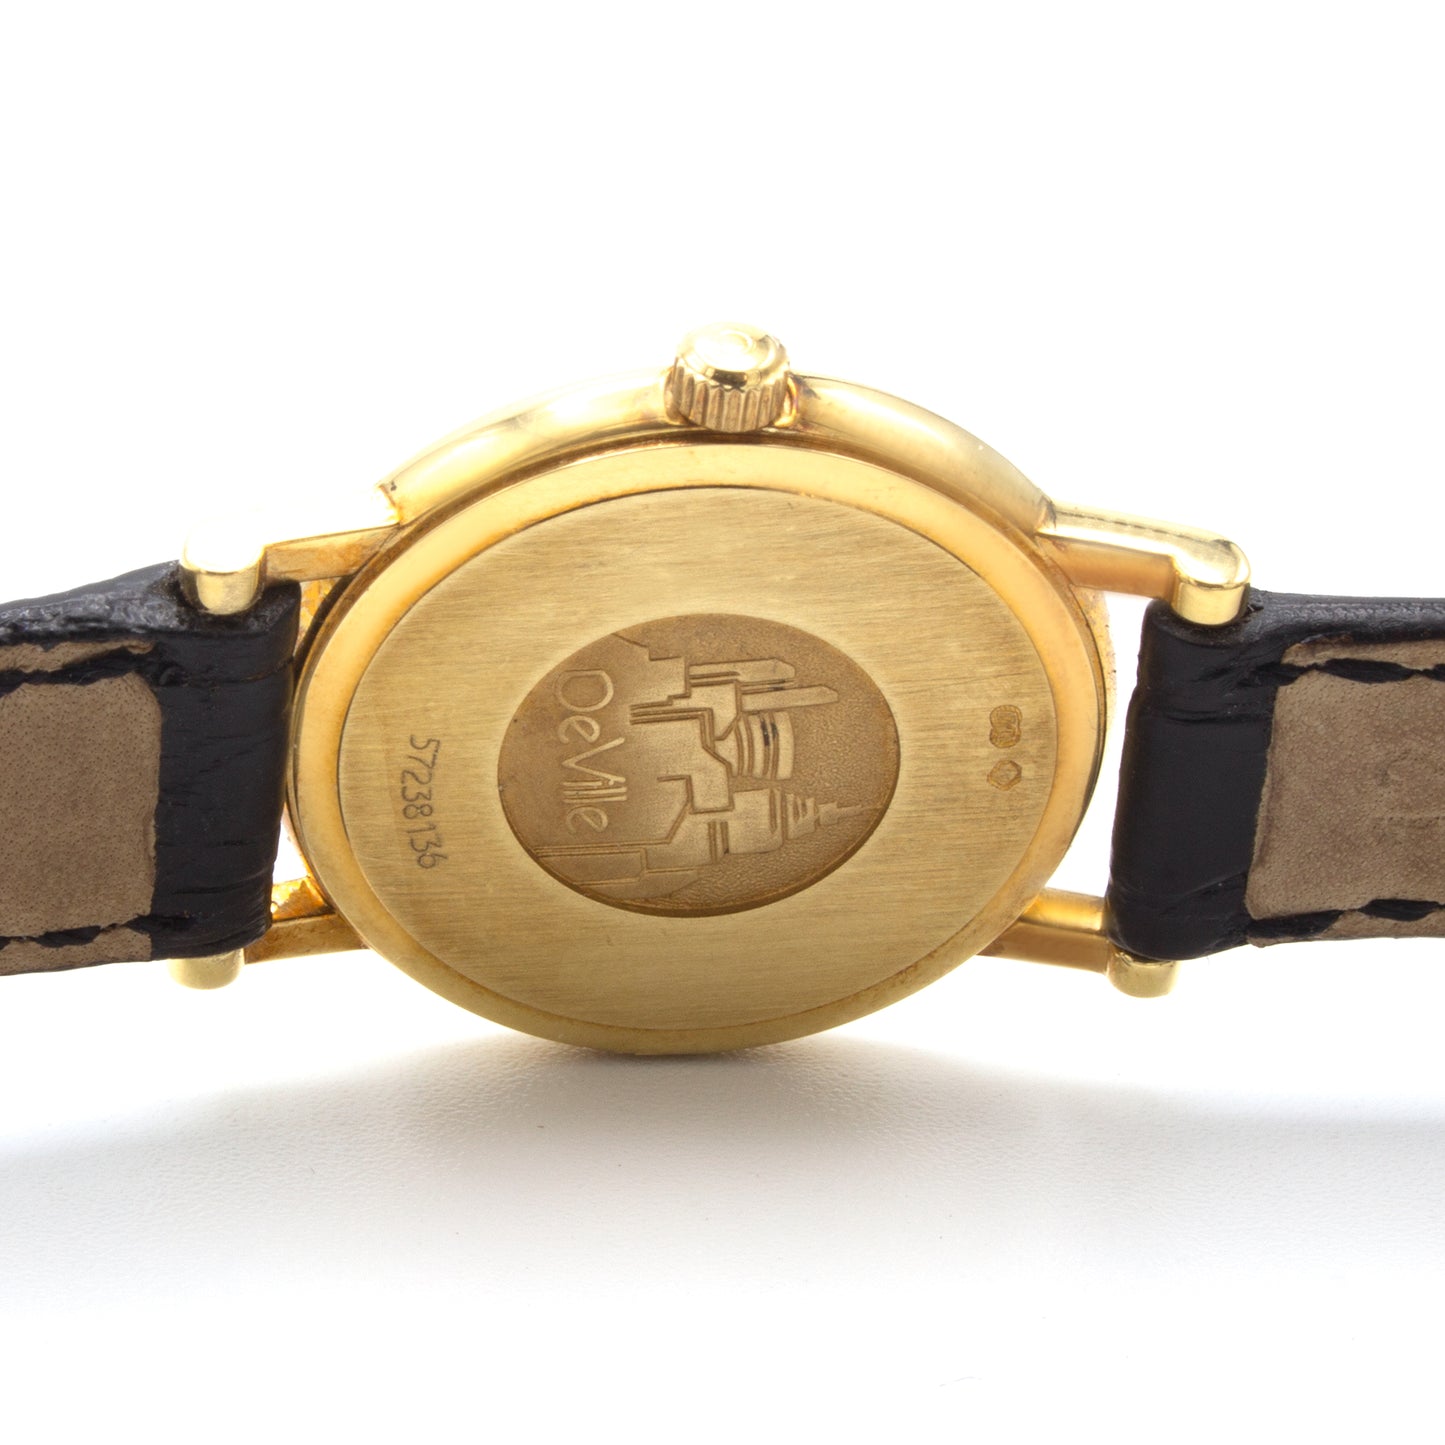 Omega De Ville 18K watch